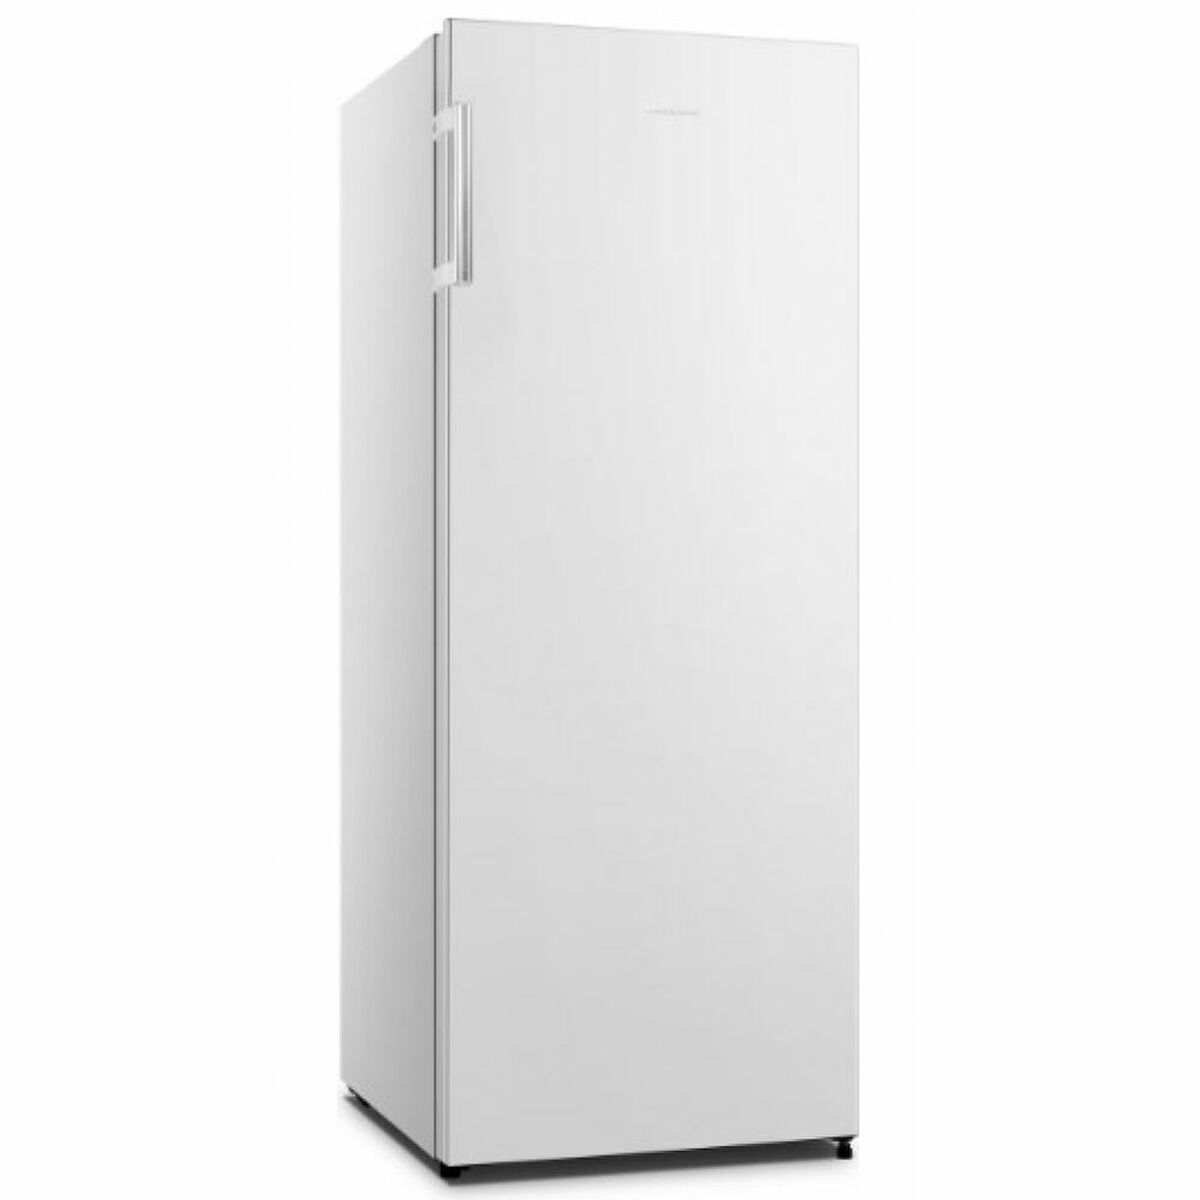 Freezer Hisense FV191N4AW1 Bianco (144 x 55,4 cm)